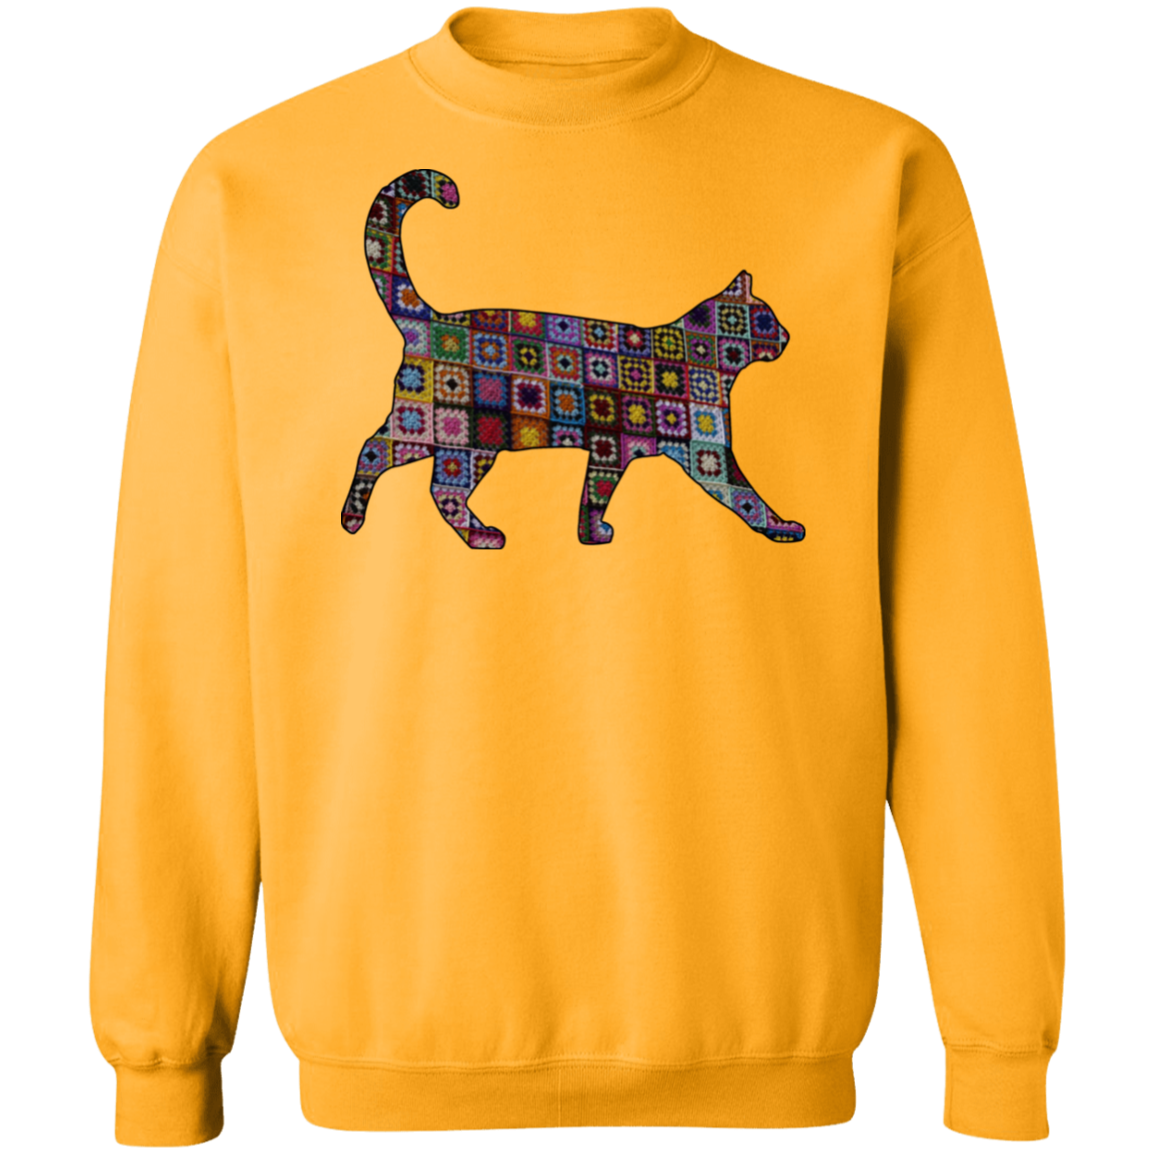 Granny Square Cat Crewneck Pullover Sweatshirt